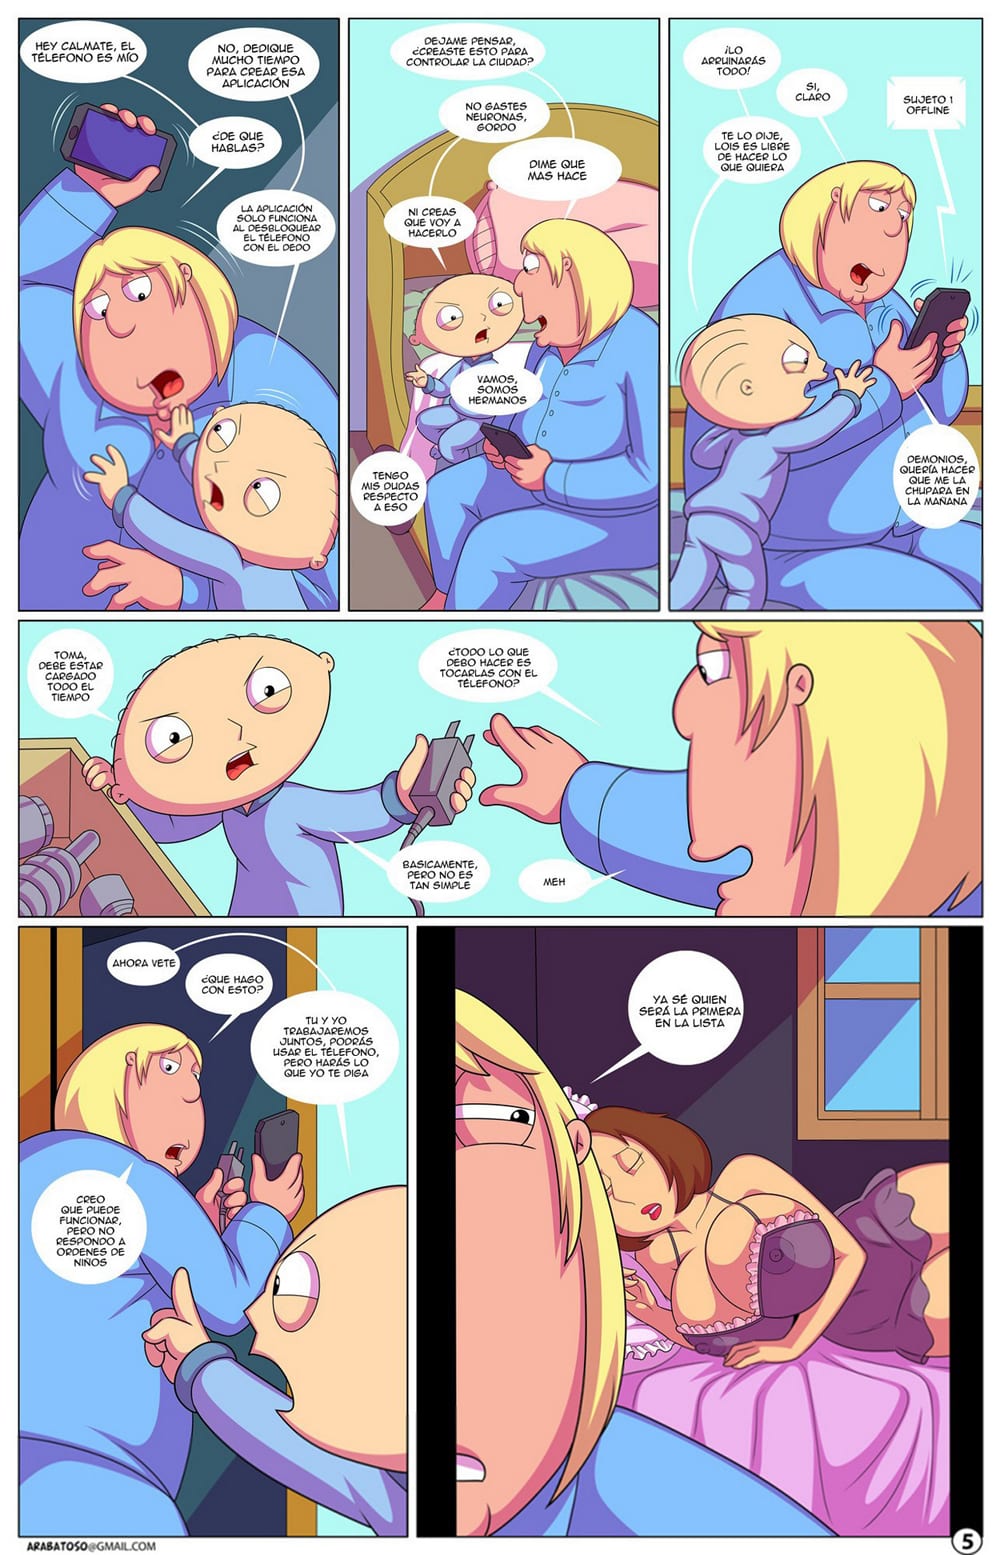 Comic porno padre de familia 5